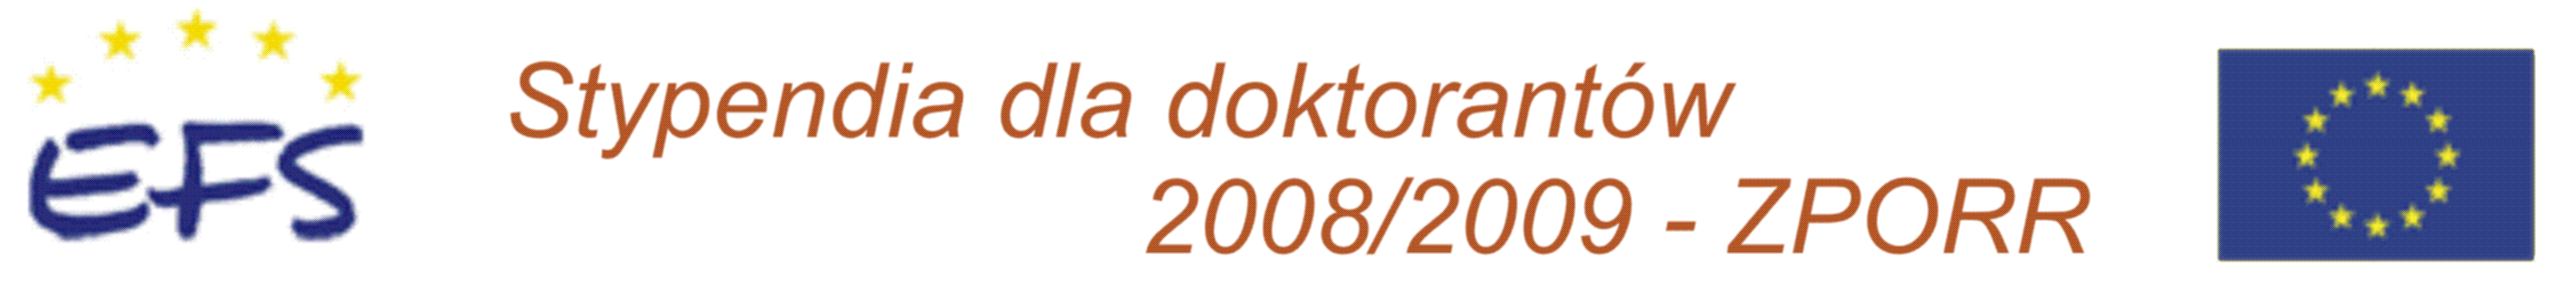 Stypendia dla doktorantów 2008/2009 ZPORR